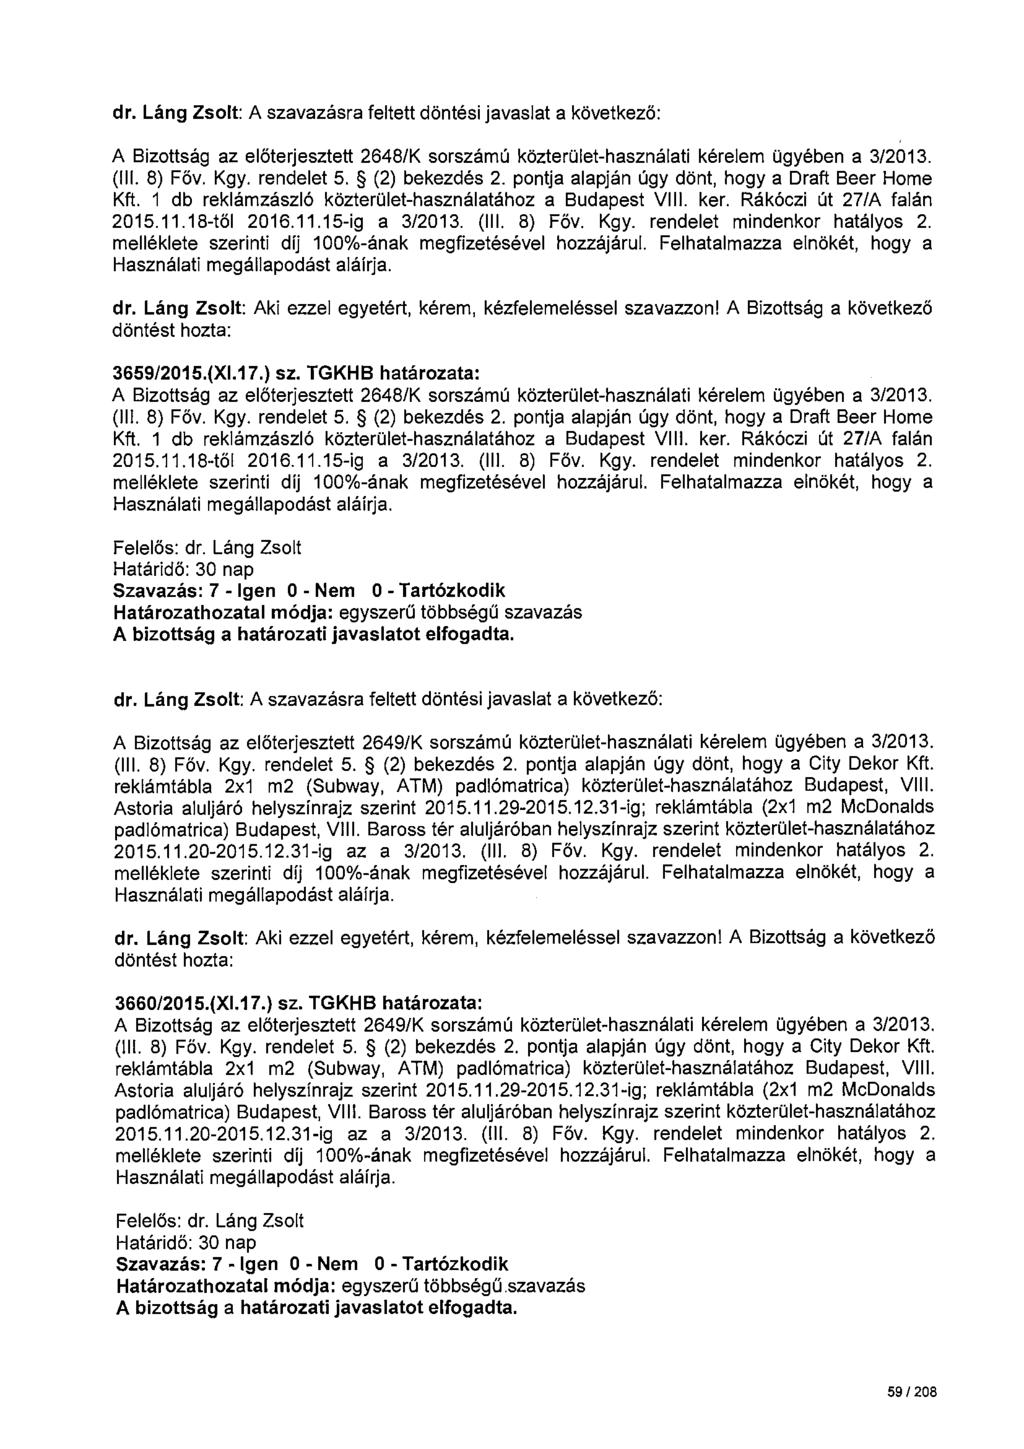 dr. Láng Zsolt: A szavazásra feltett döntési javaslat a következö: A Bizottság az előterjesztett 2648/K sorszámú közterület-használati kérelem ügyében a 3/2013. (Ill. 8) Föv. Kgy. rendelet 5.